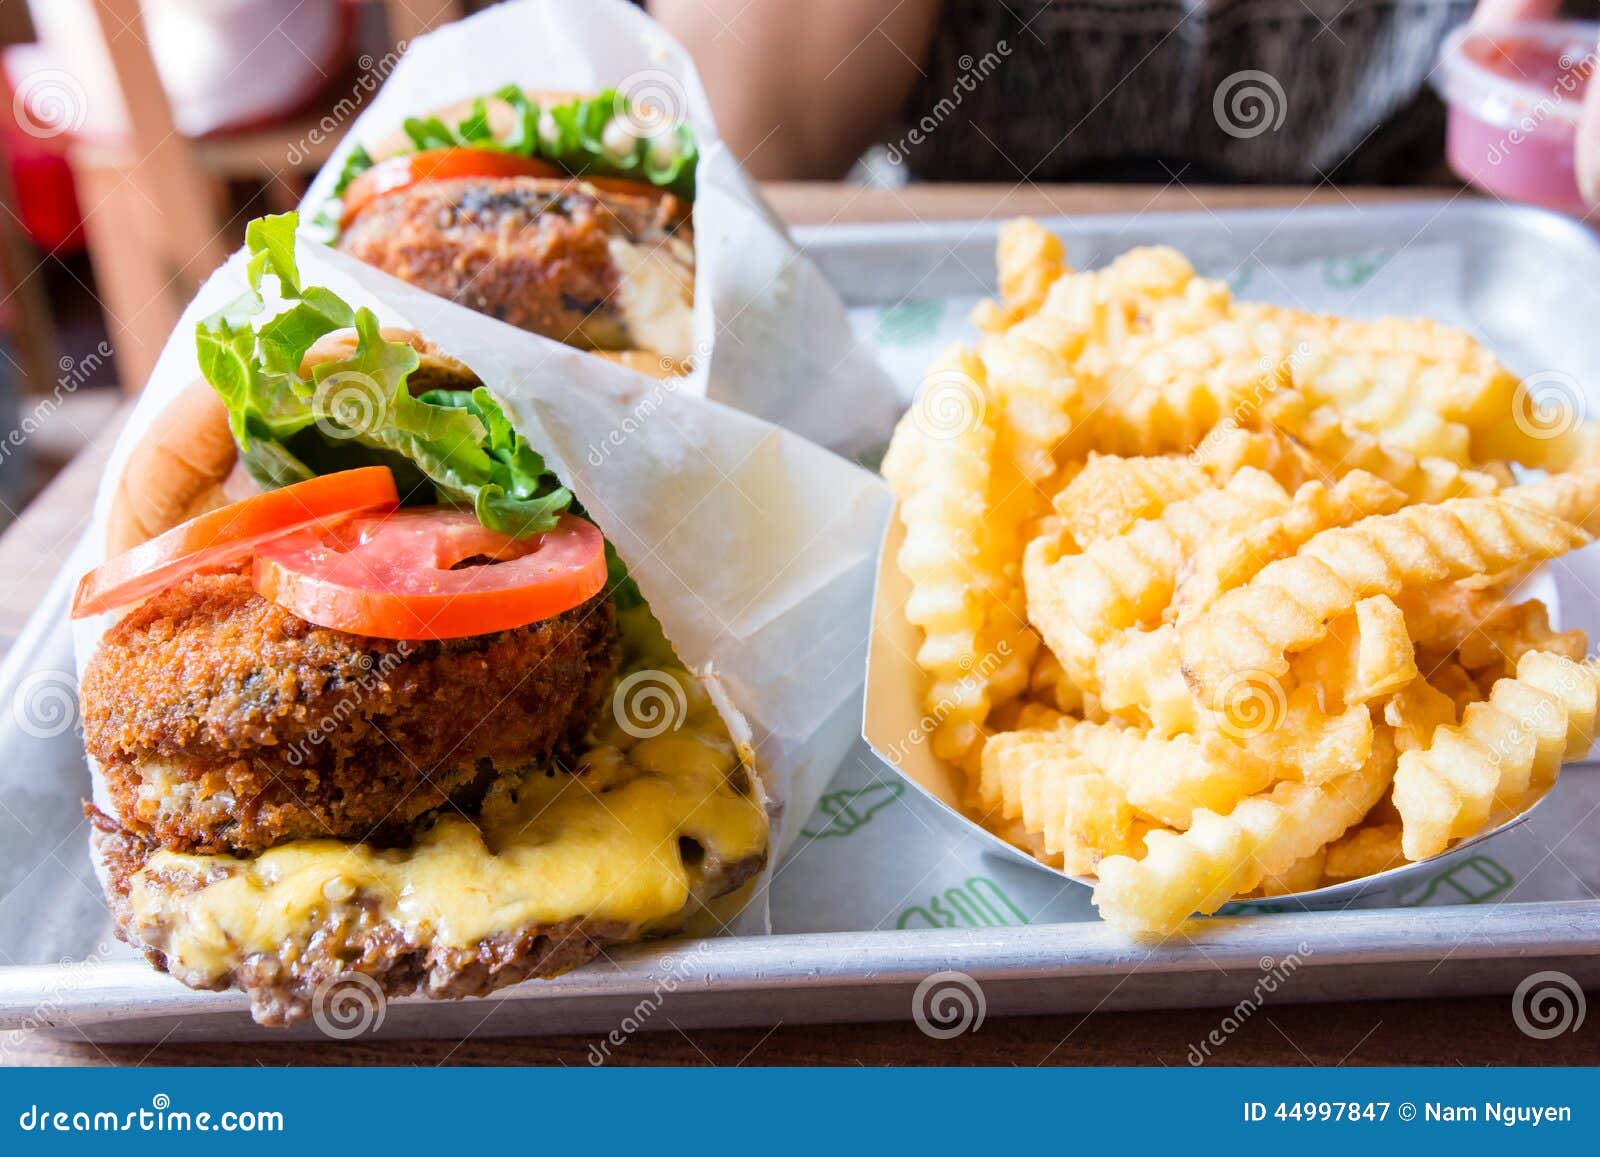 shake shack burger and hand cut fries